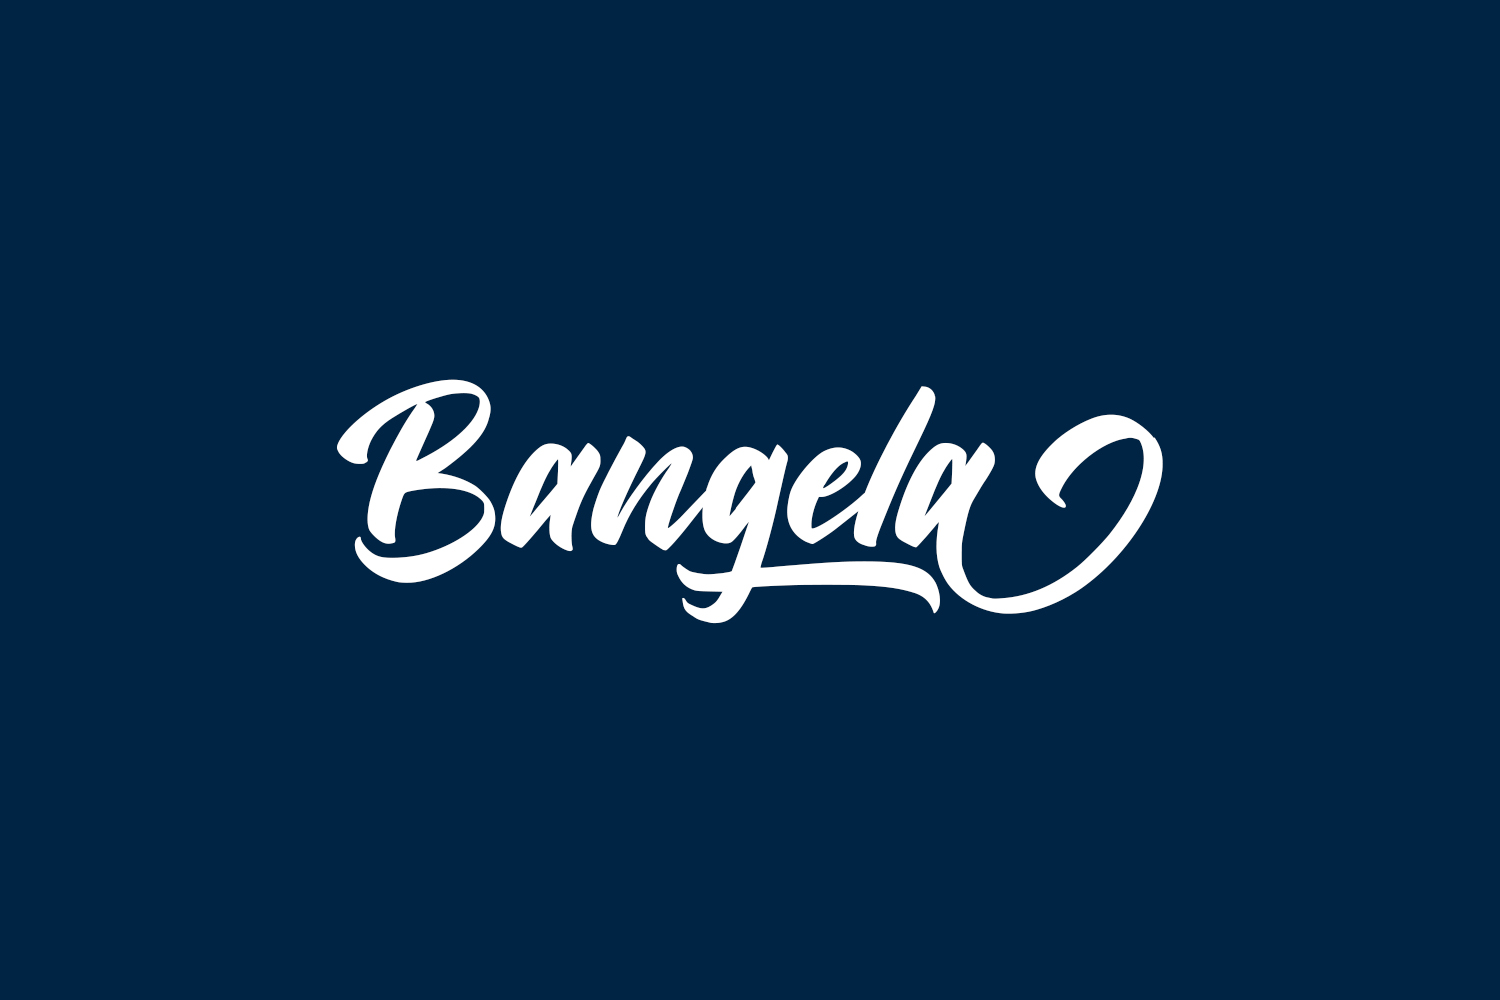 Bangela Free Font